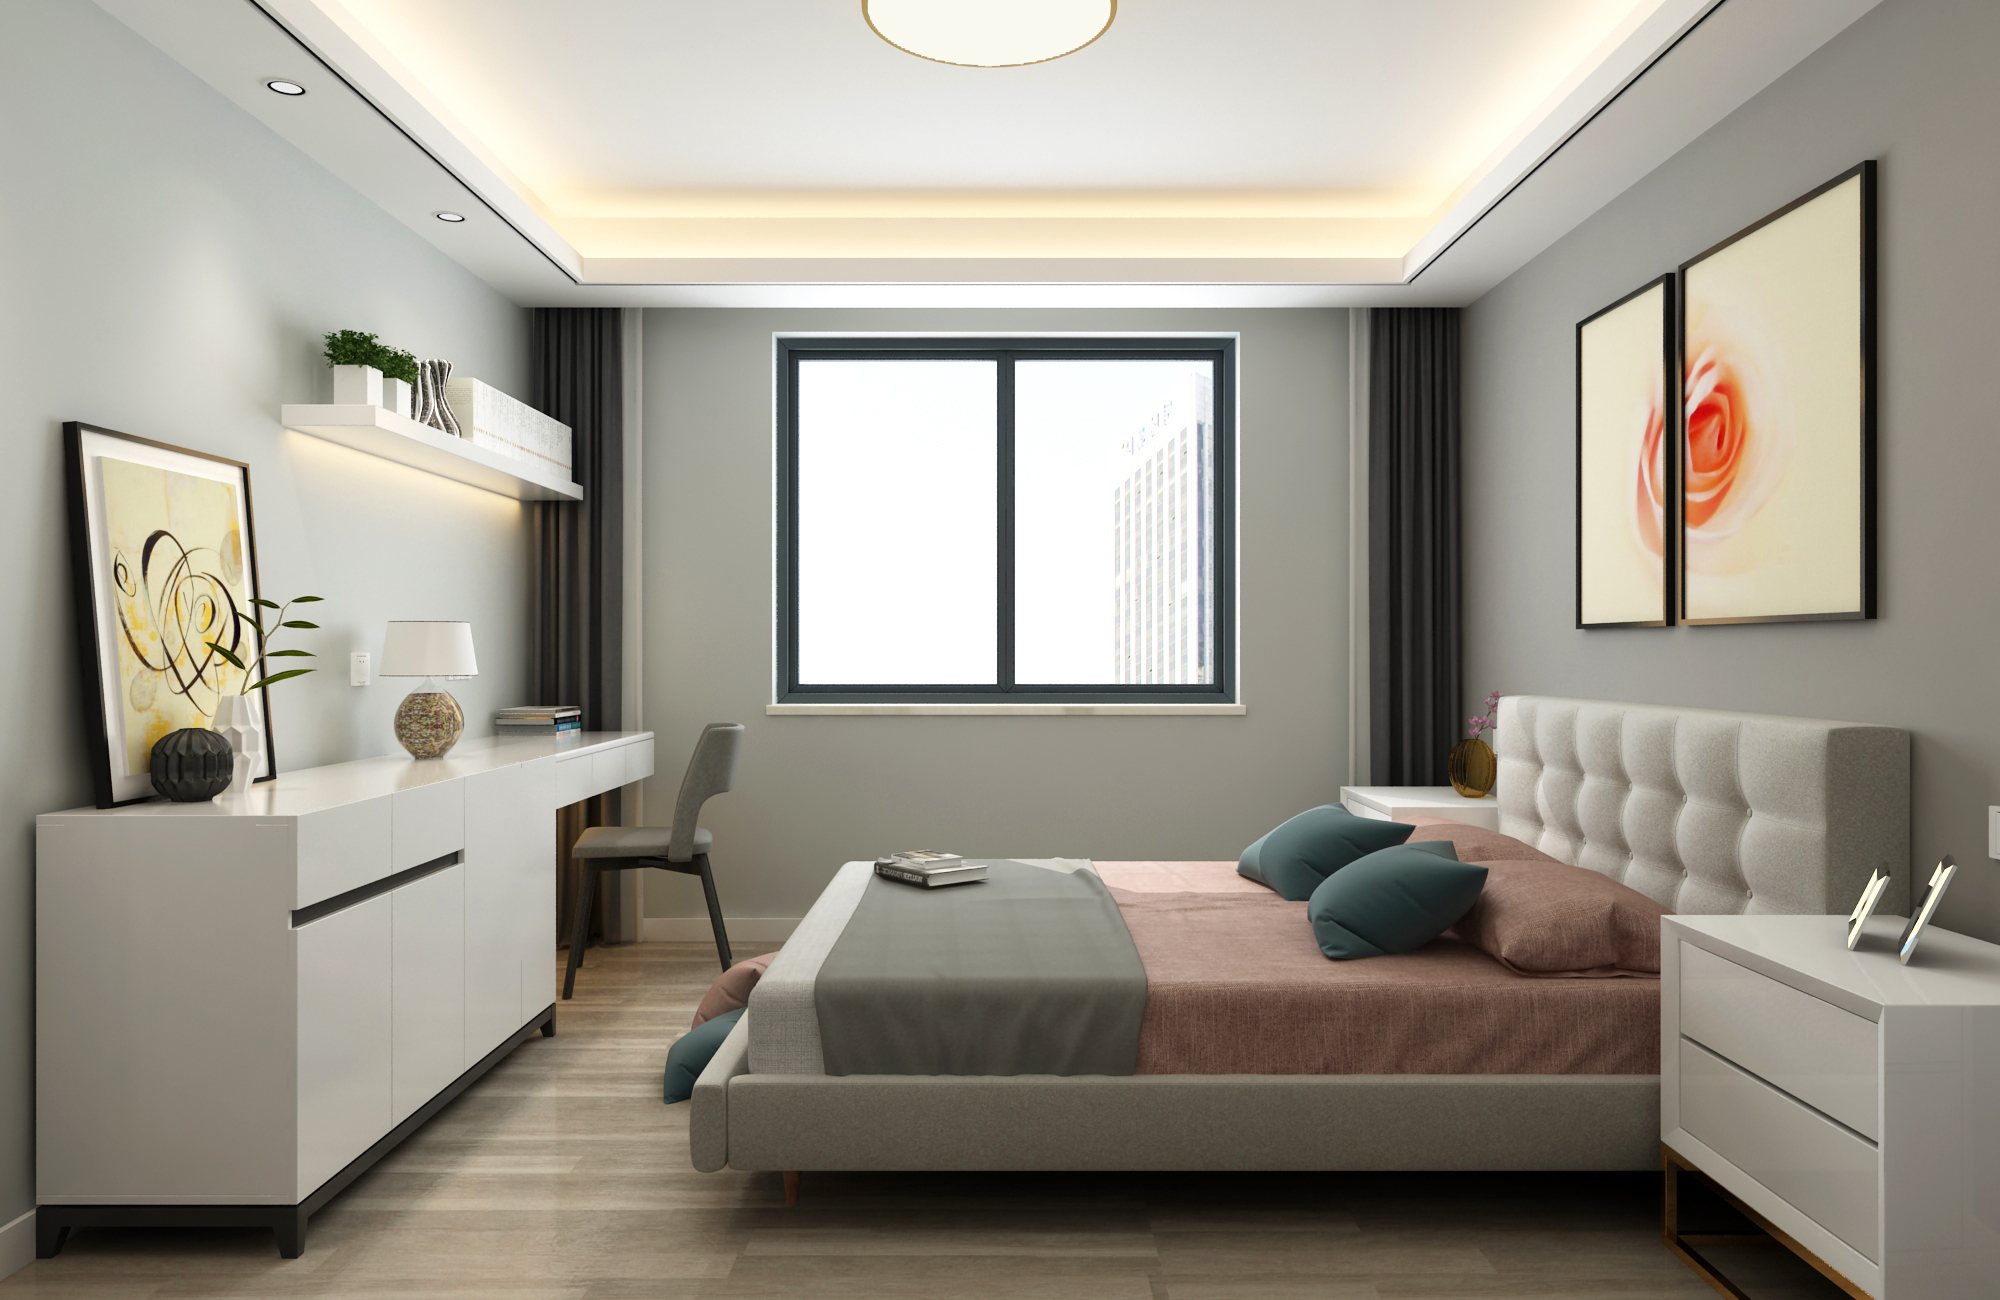 现代风格三居卧室装修效果图